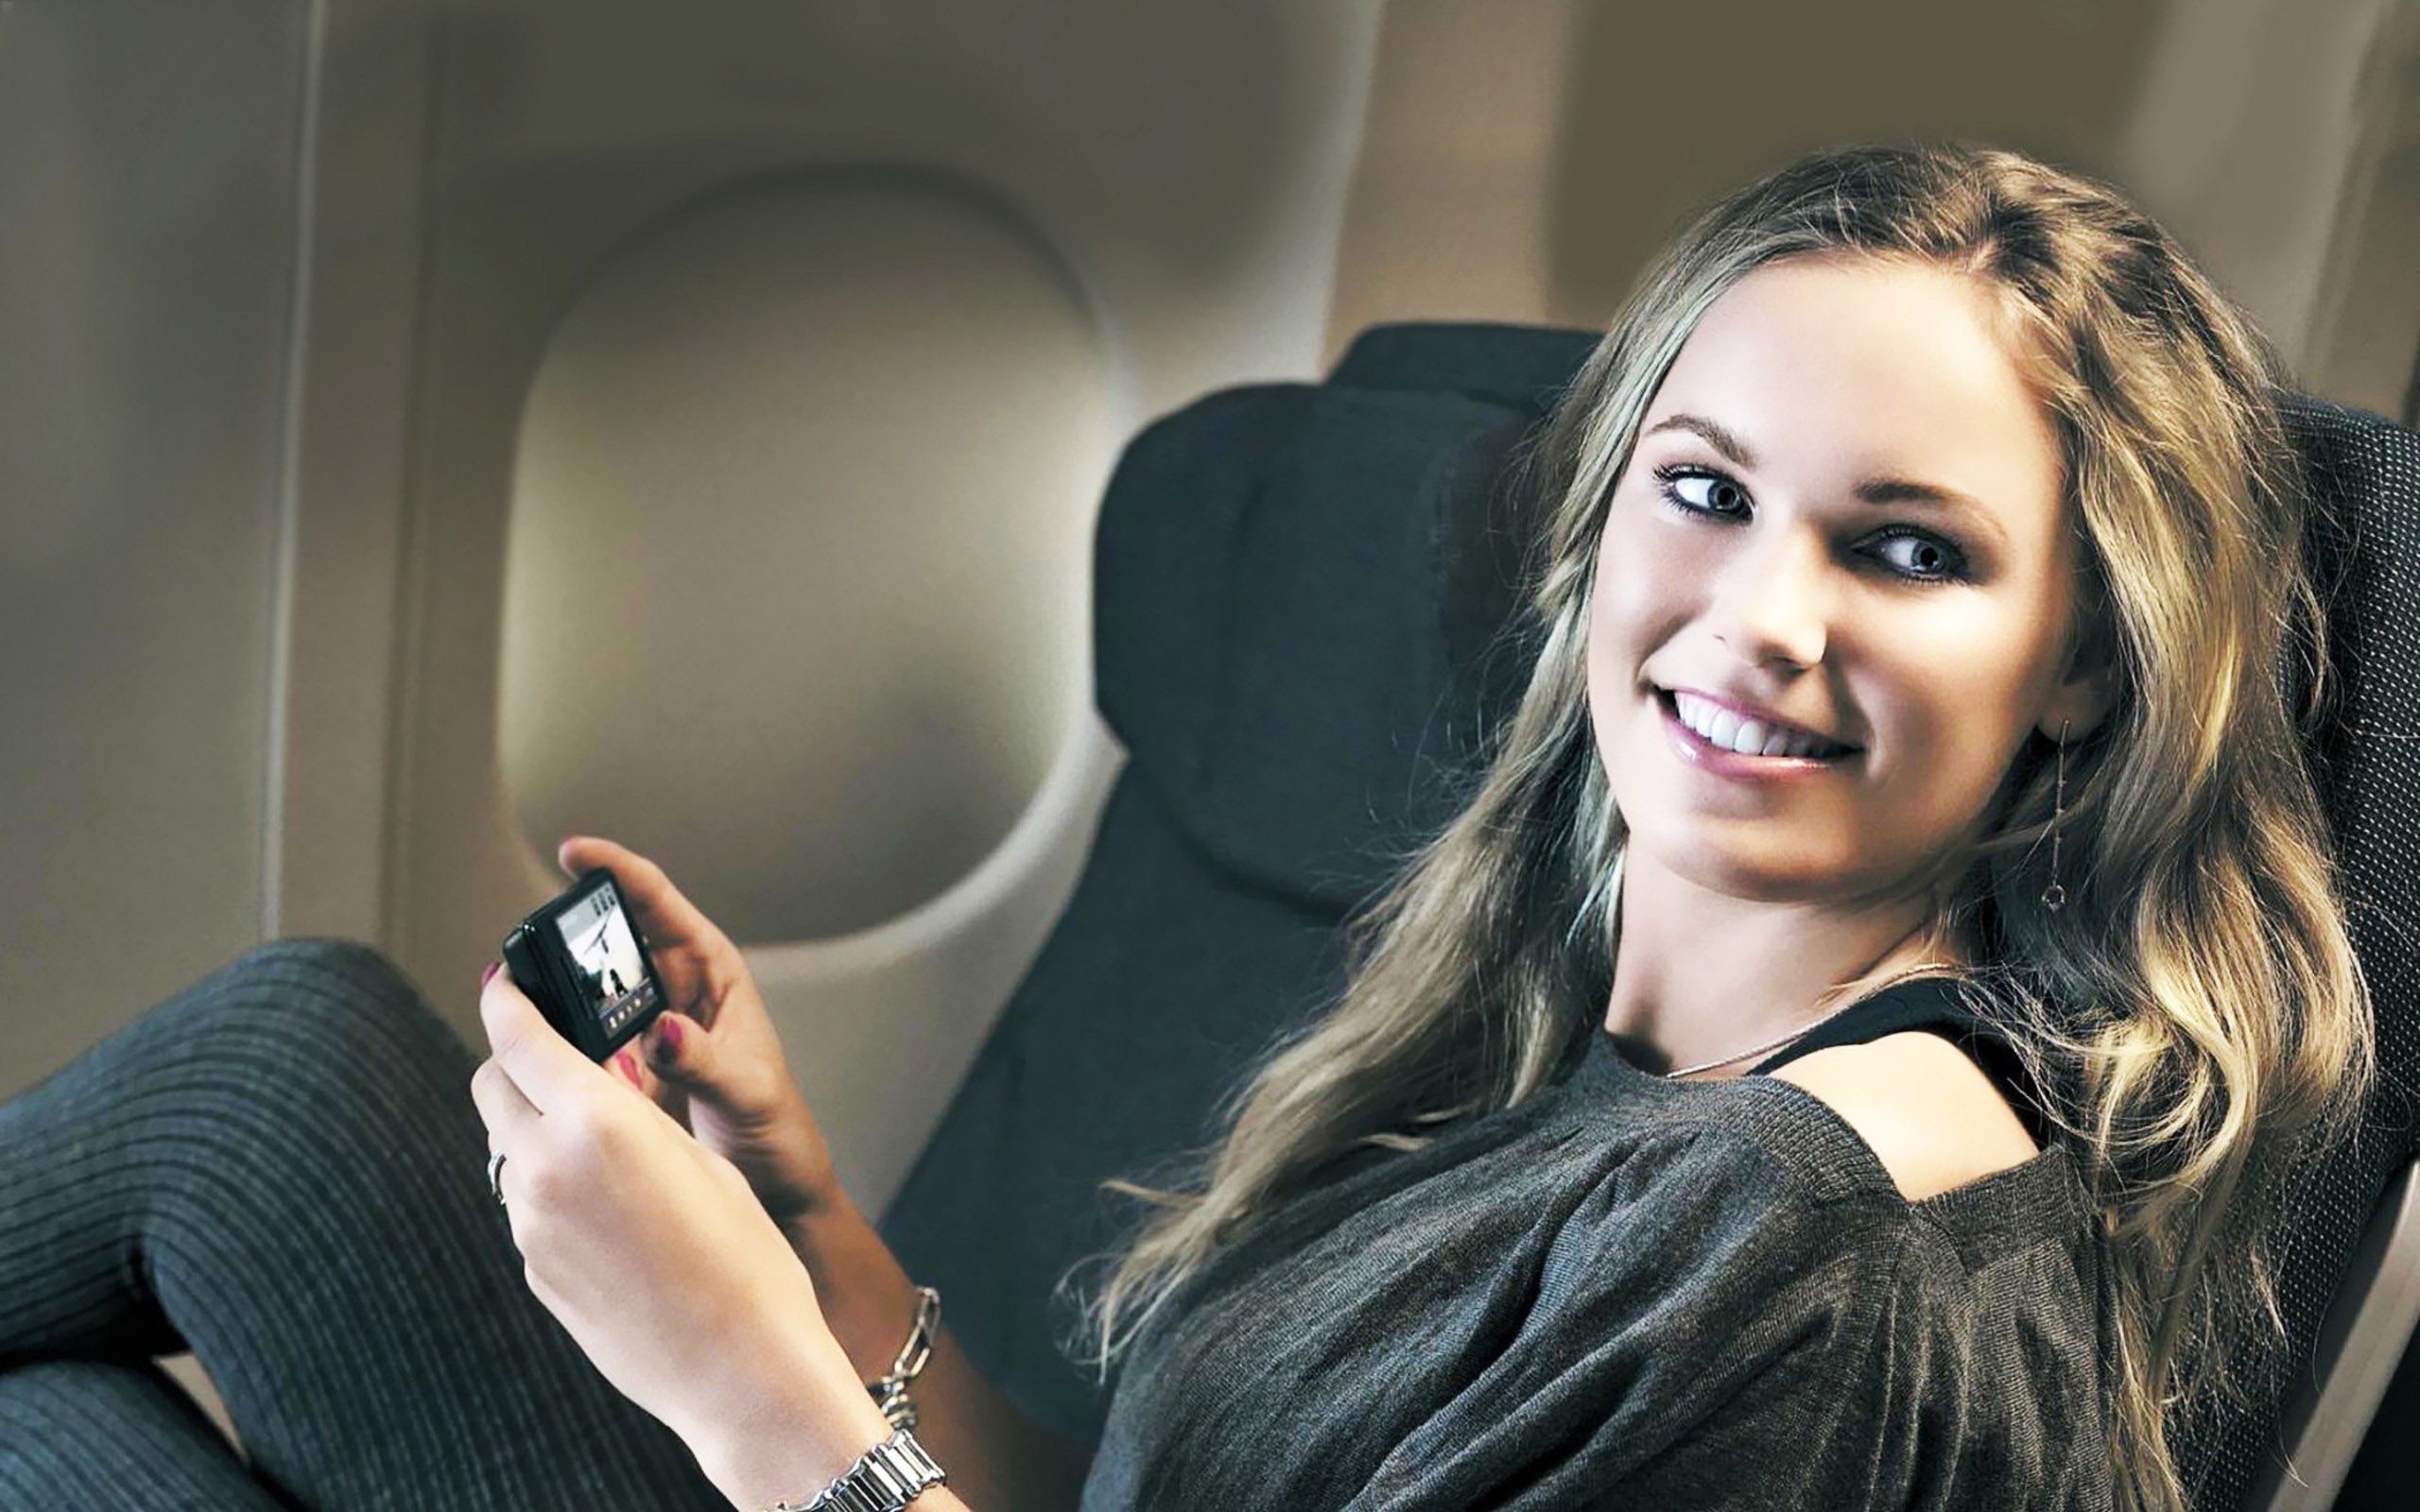 Caroline Wozniacki Airplane for 2560 x 1600 widescreen resolution